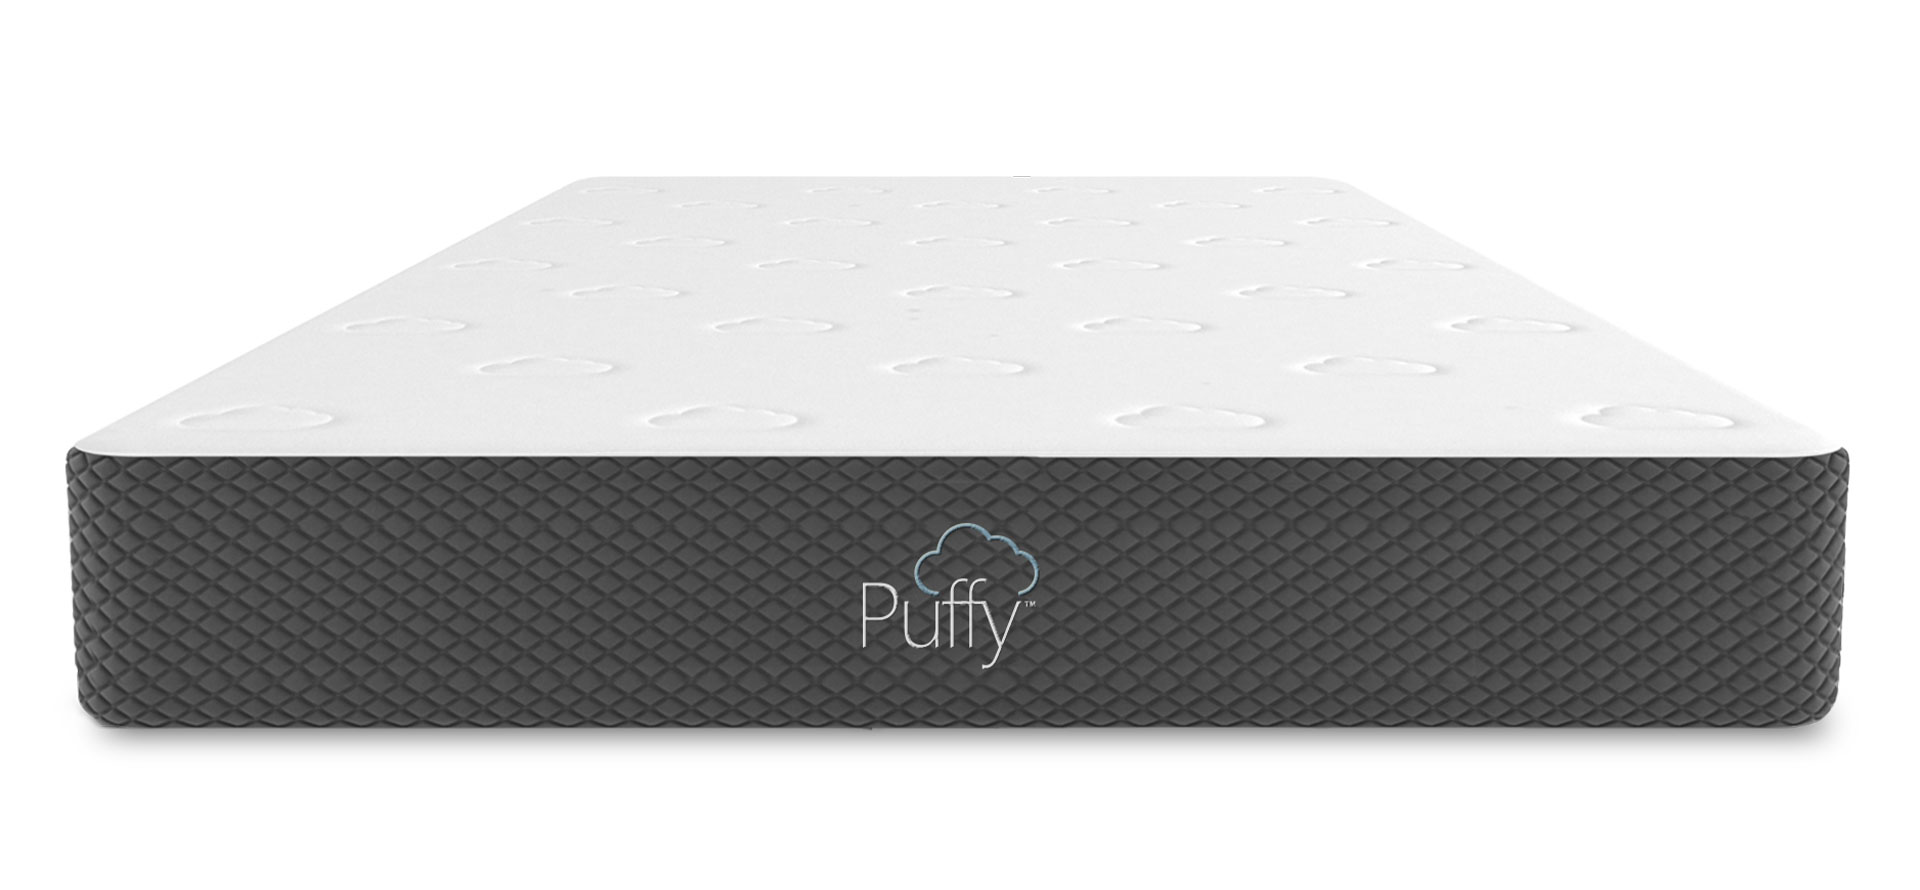 Puffy king mattress.